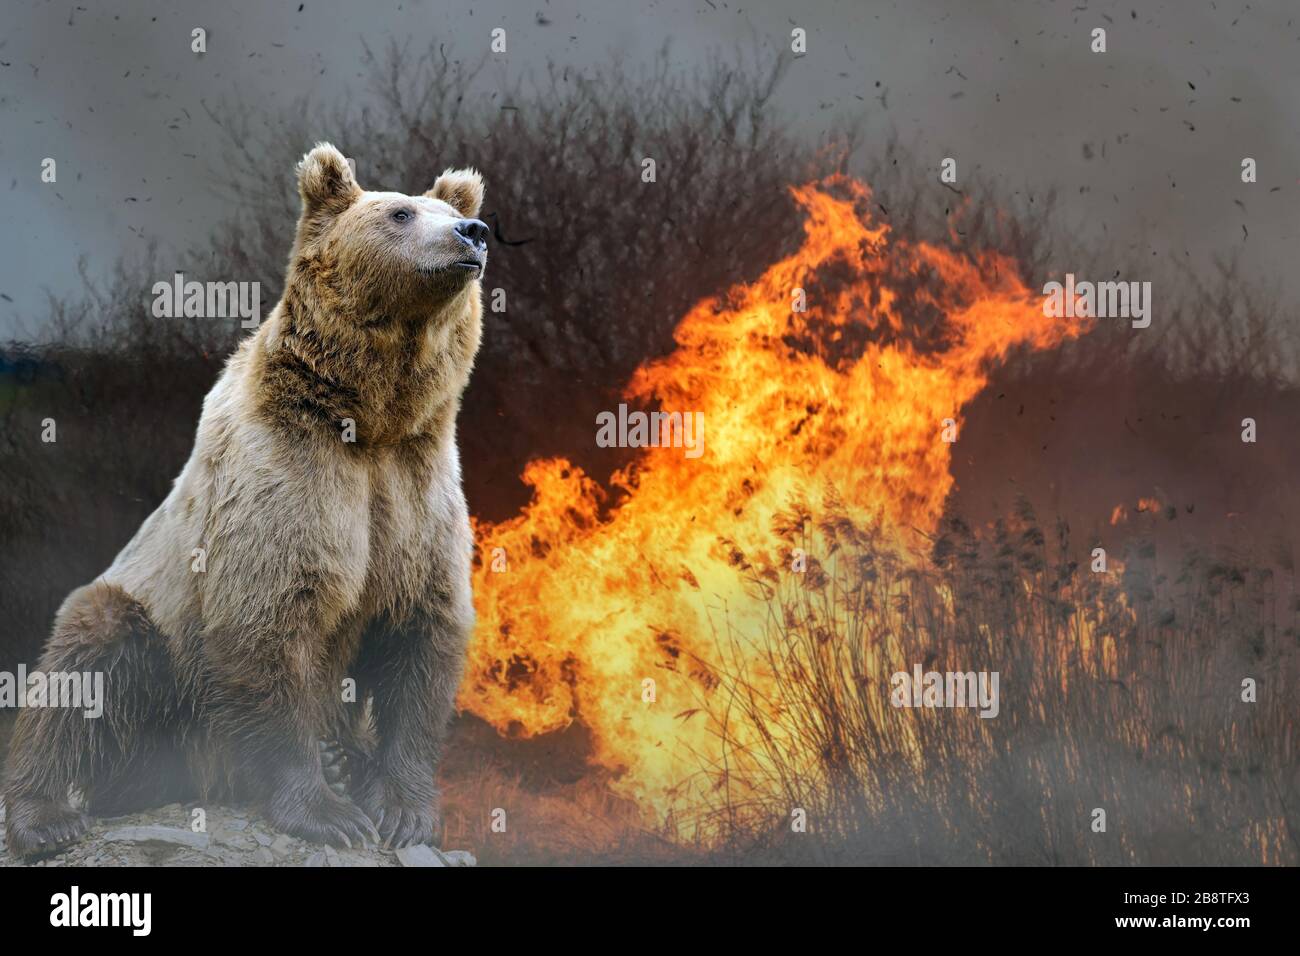 Tragen Sie auf dem Hintergrund des brennenden Waldes. Wildes Tier inmitten von Feuer und Rauch Stockfoto